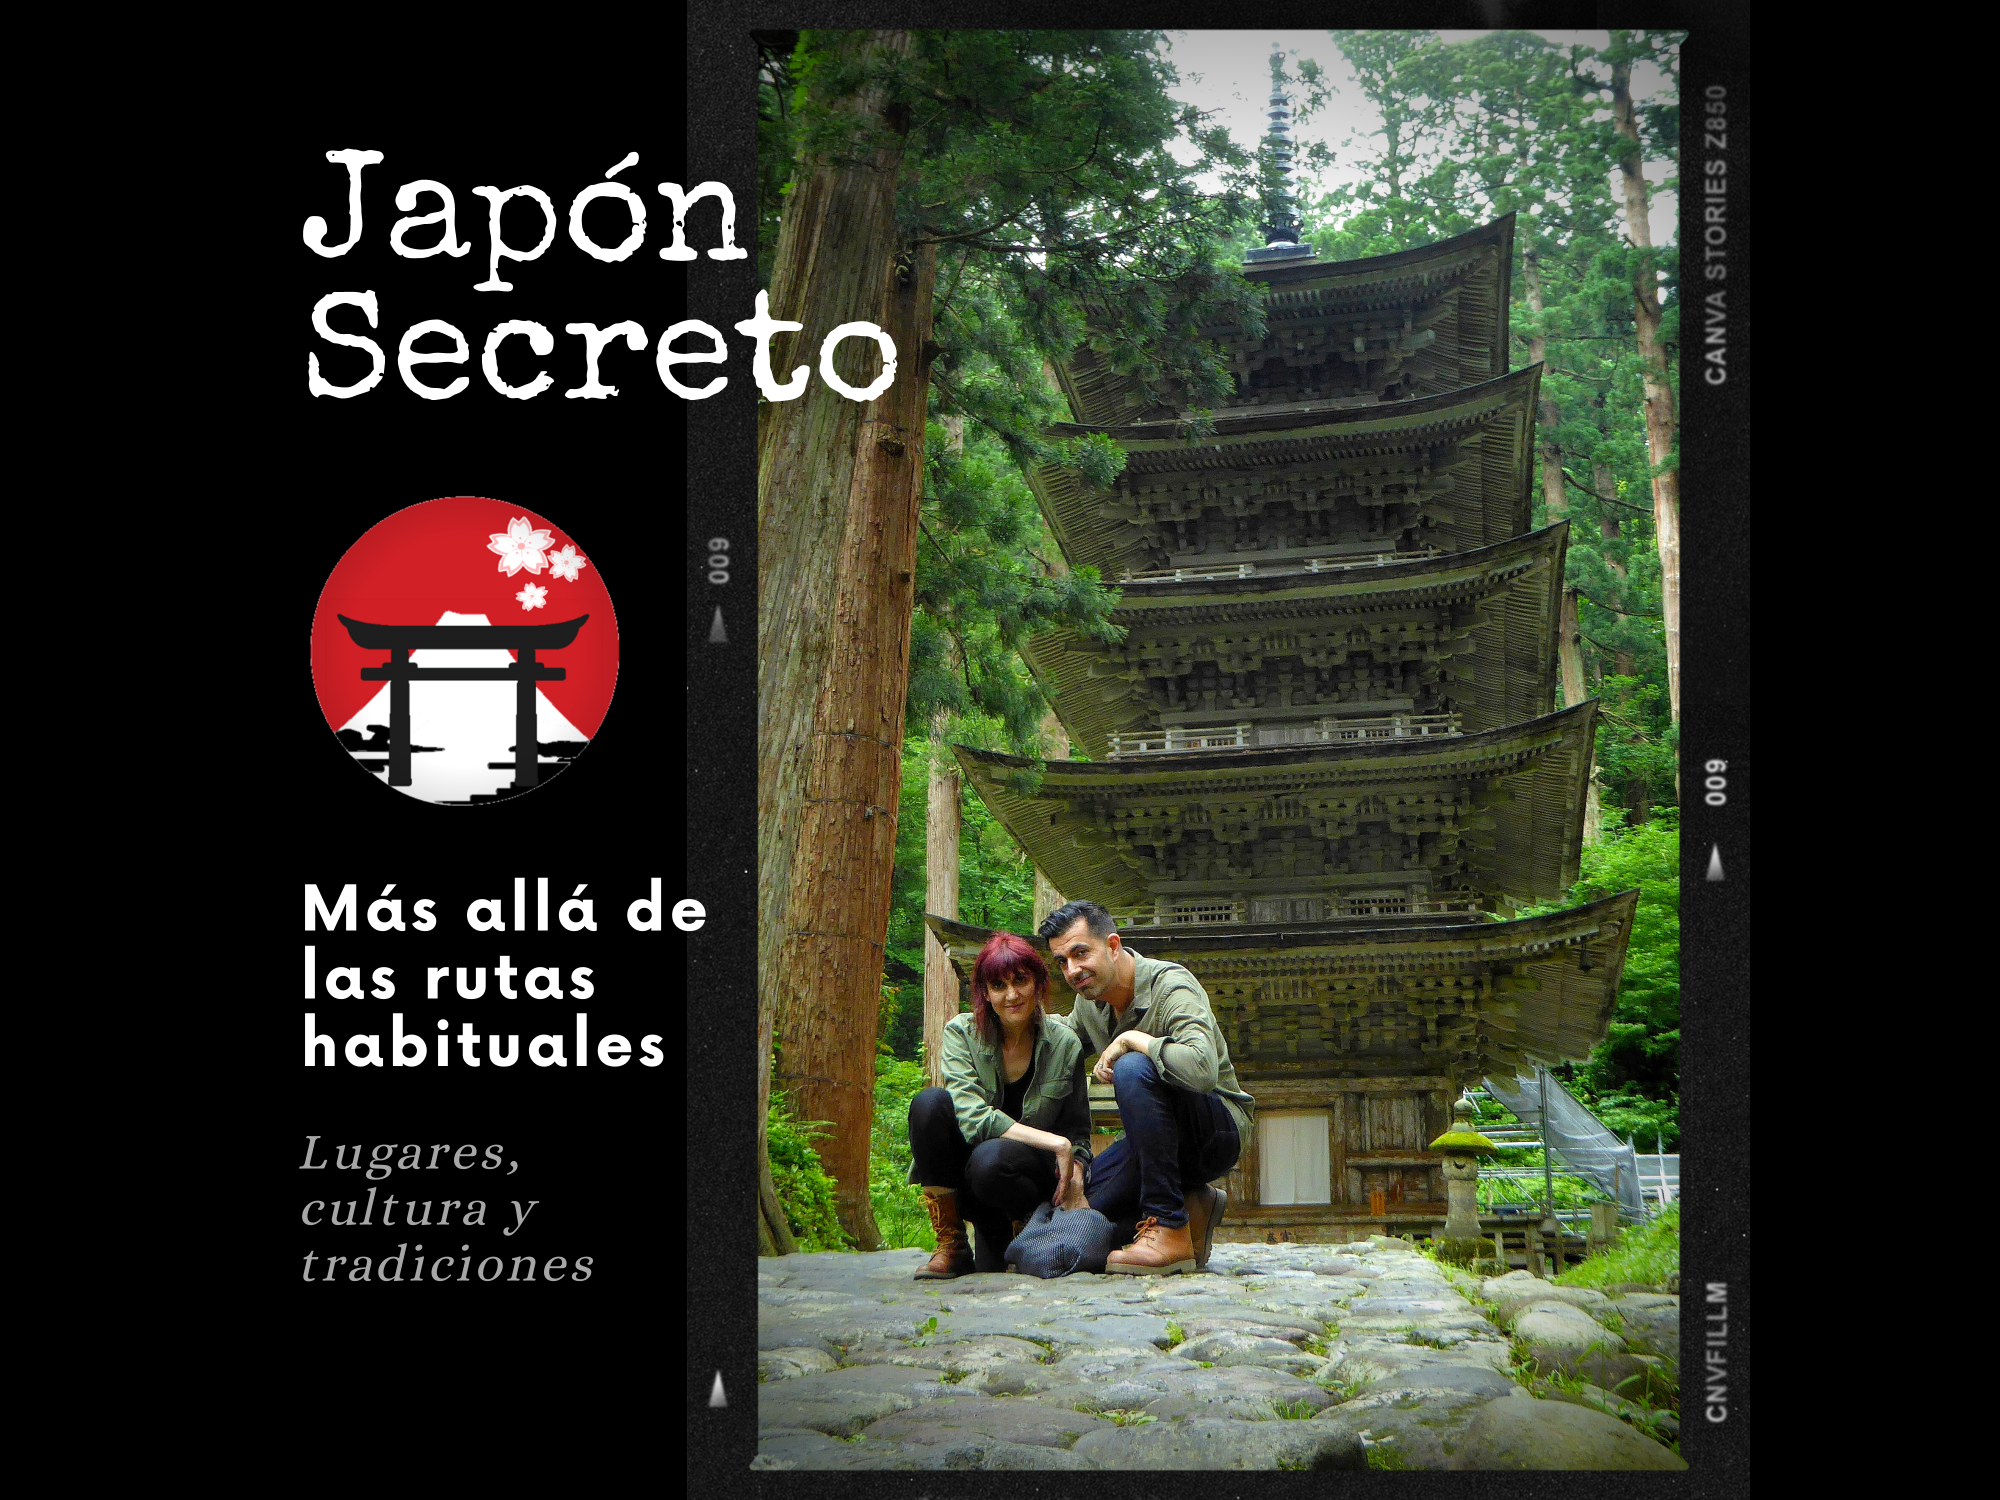 (c) Japon-secreto.com